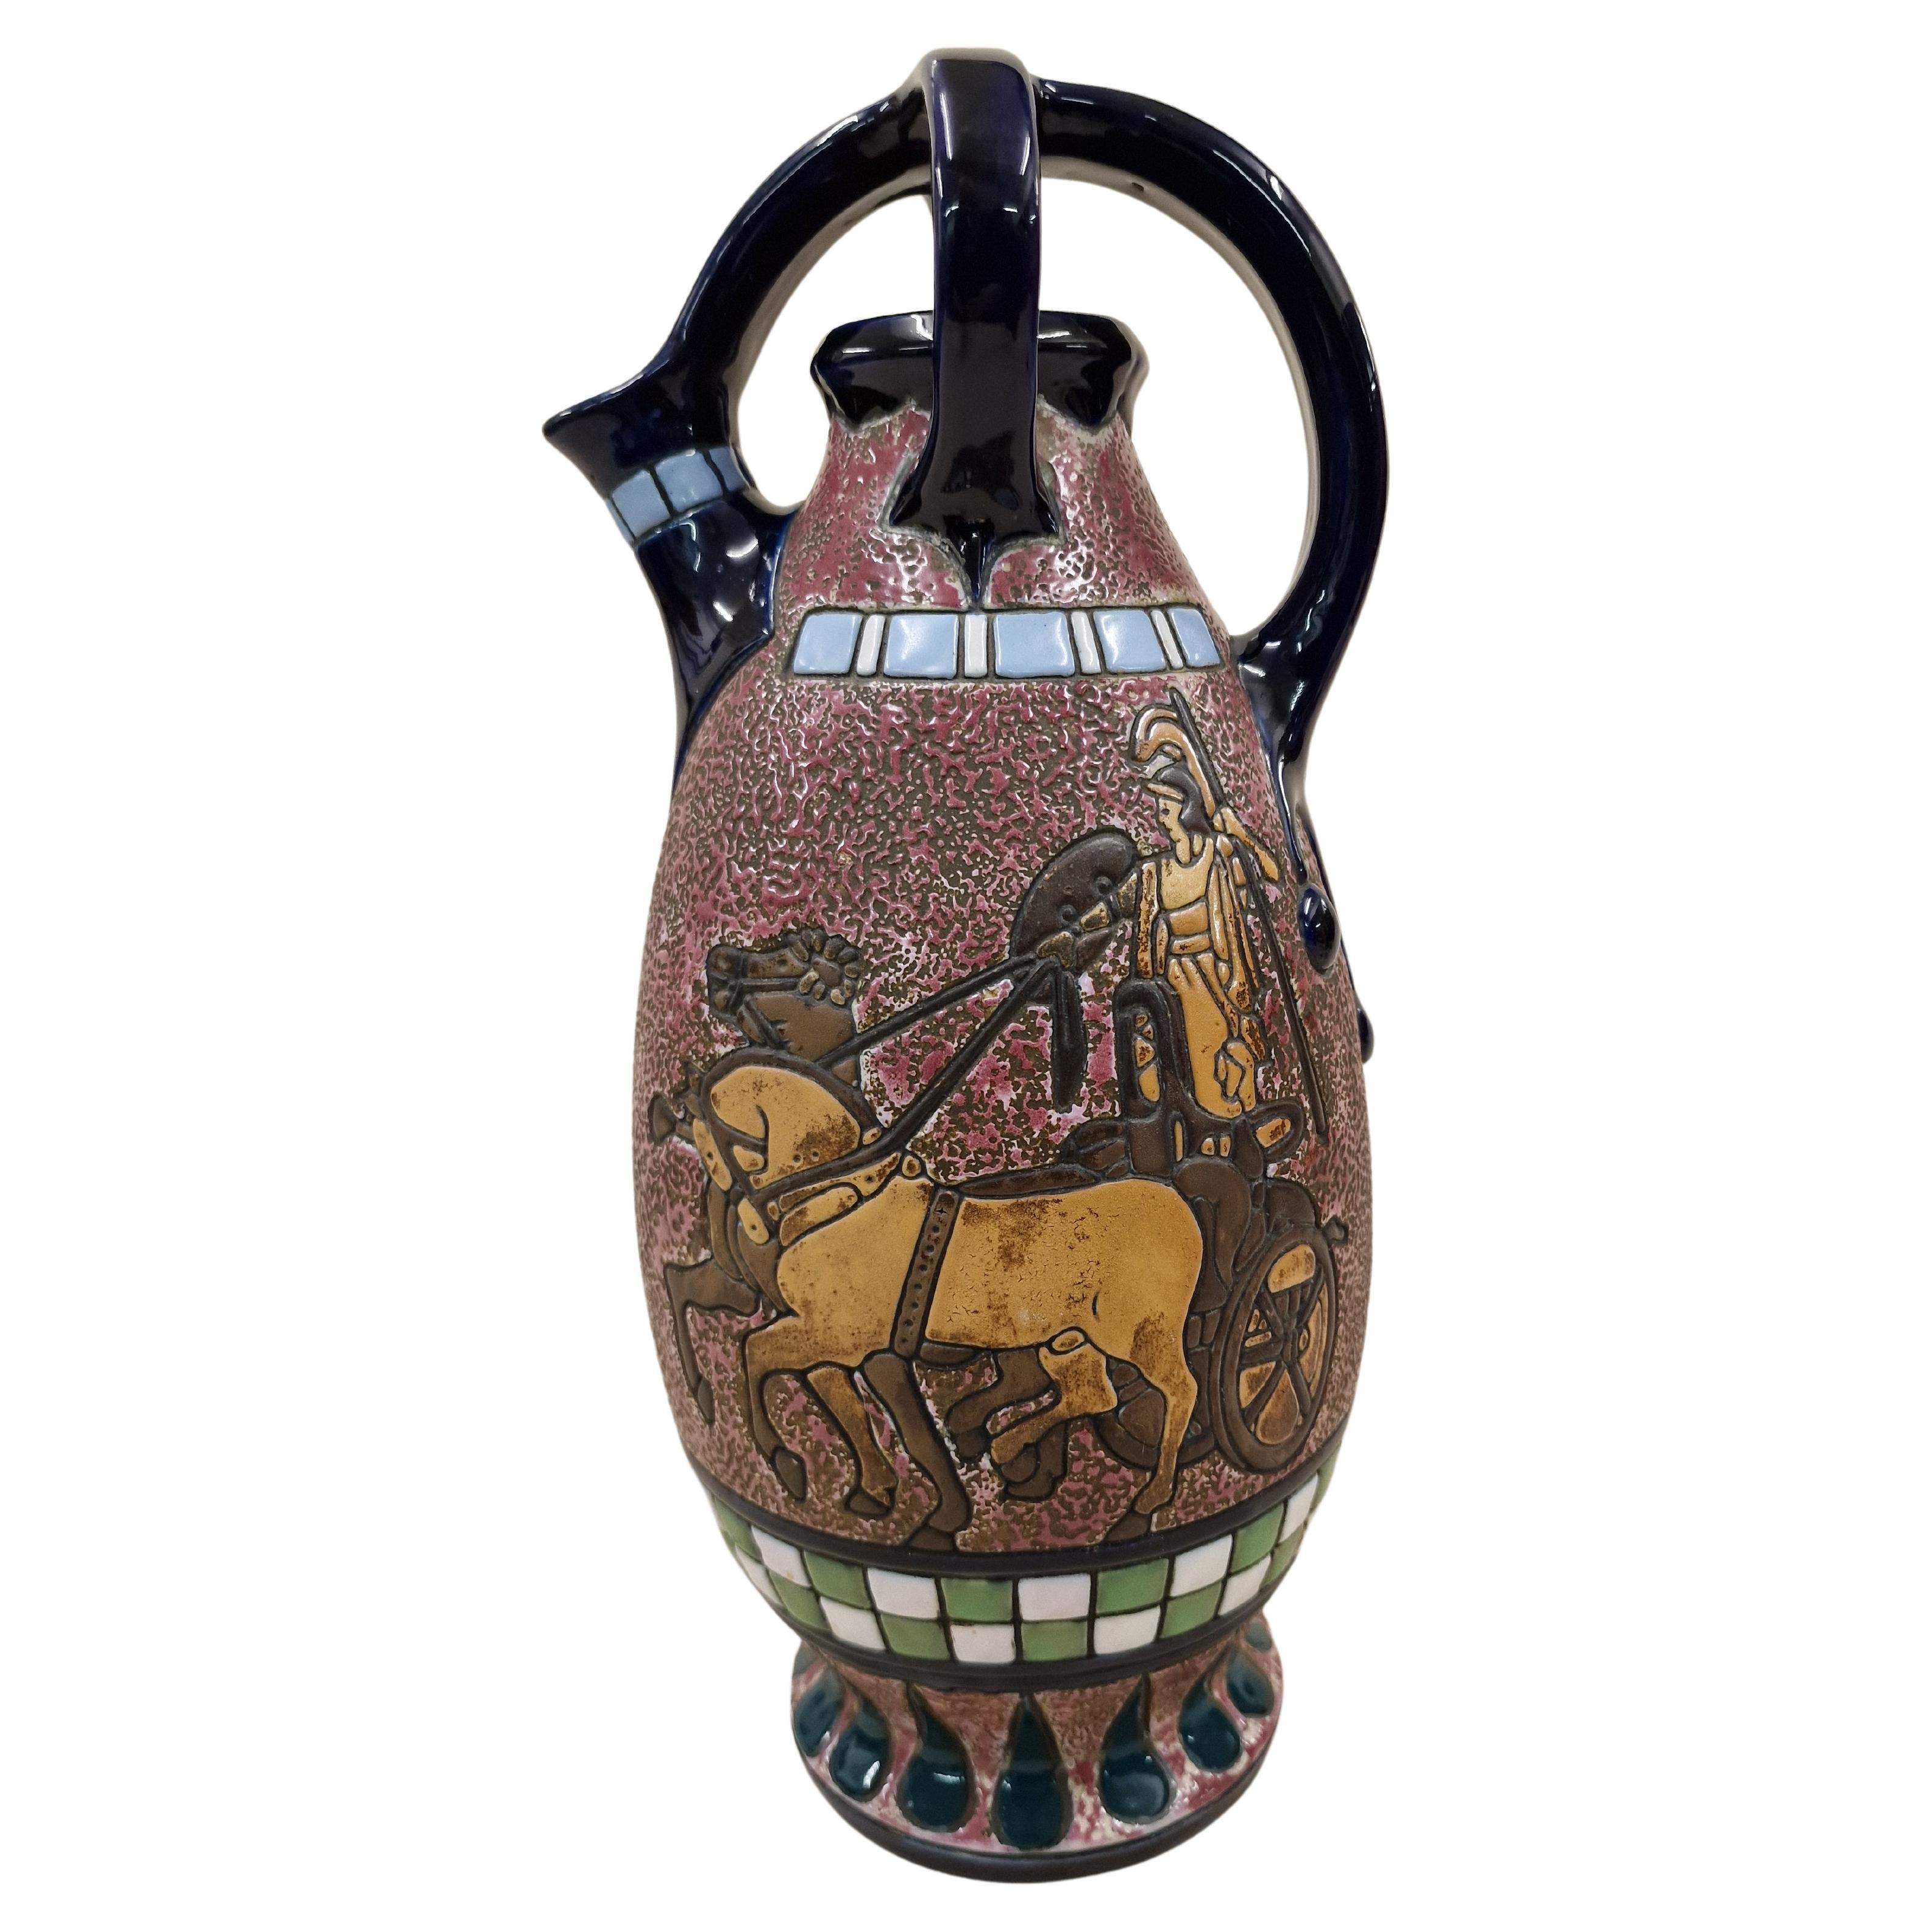 Seltener sehr dekorativer drehbarer Krug, Pferdewagen, Art déco, Amphora, Tschechische R, 1915